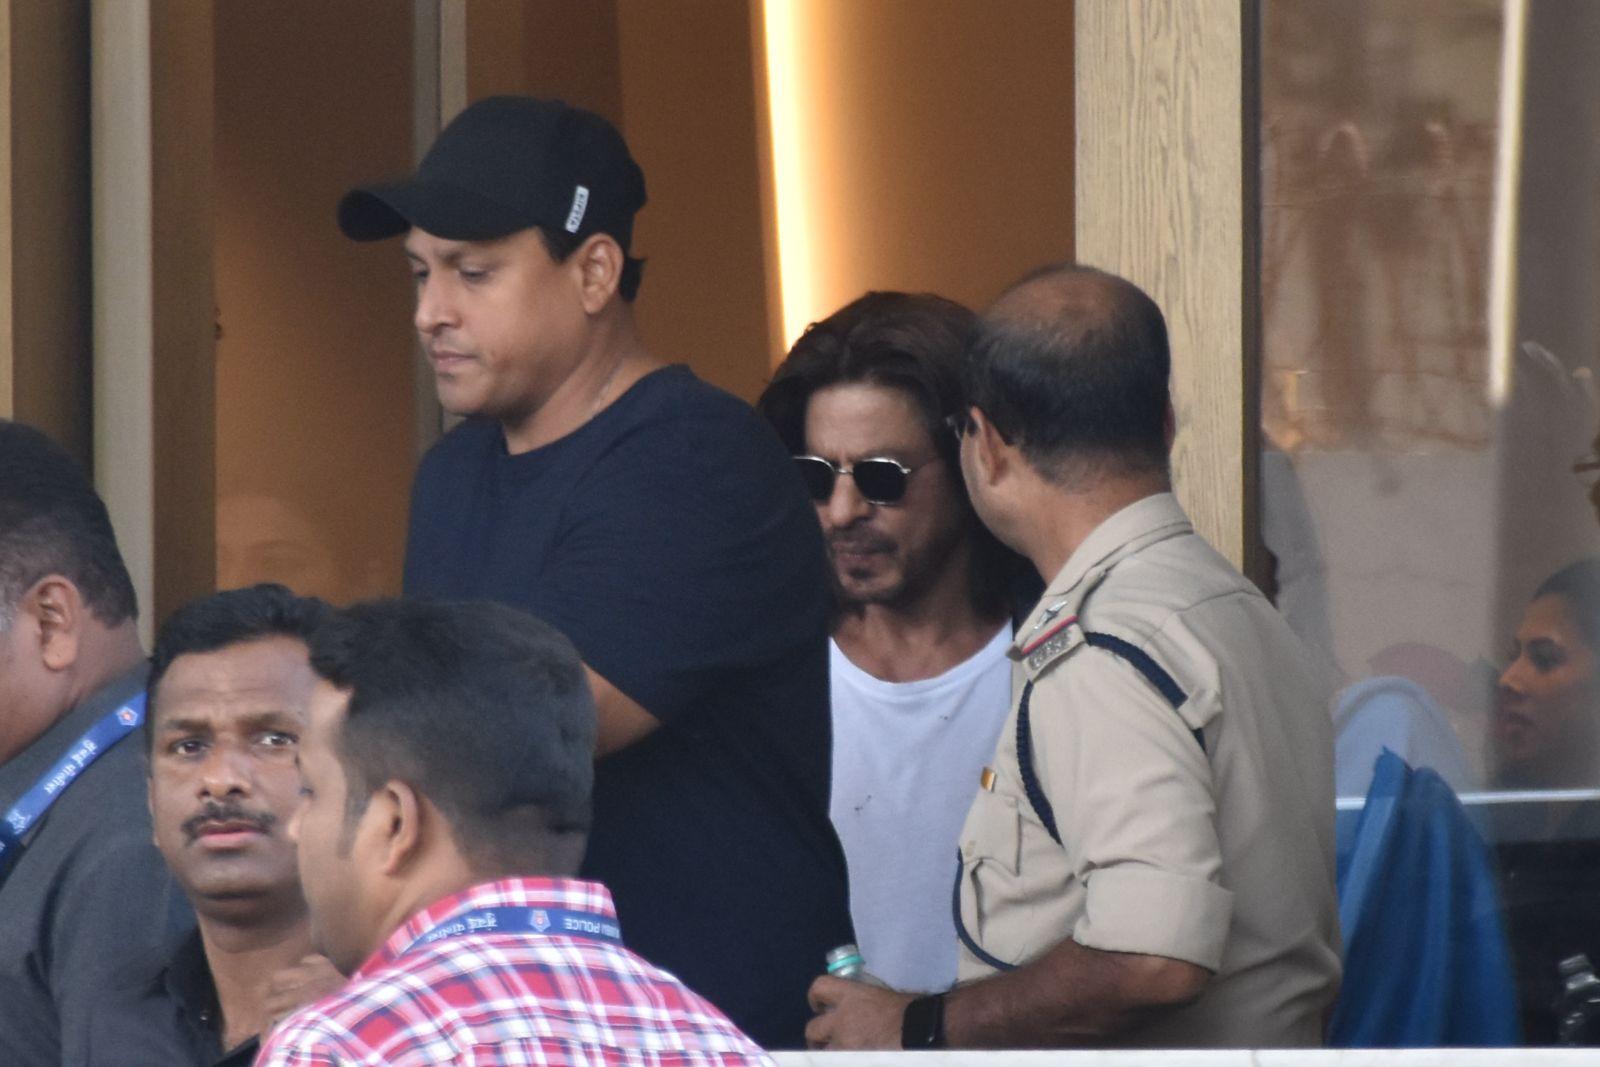 Shah Rukh Khan was snapped at Kalina airport